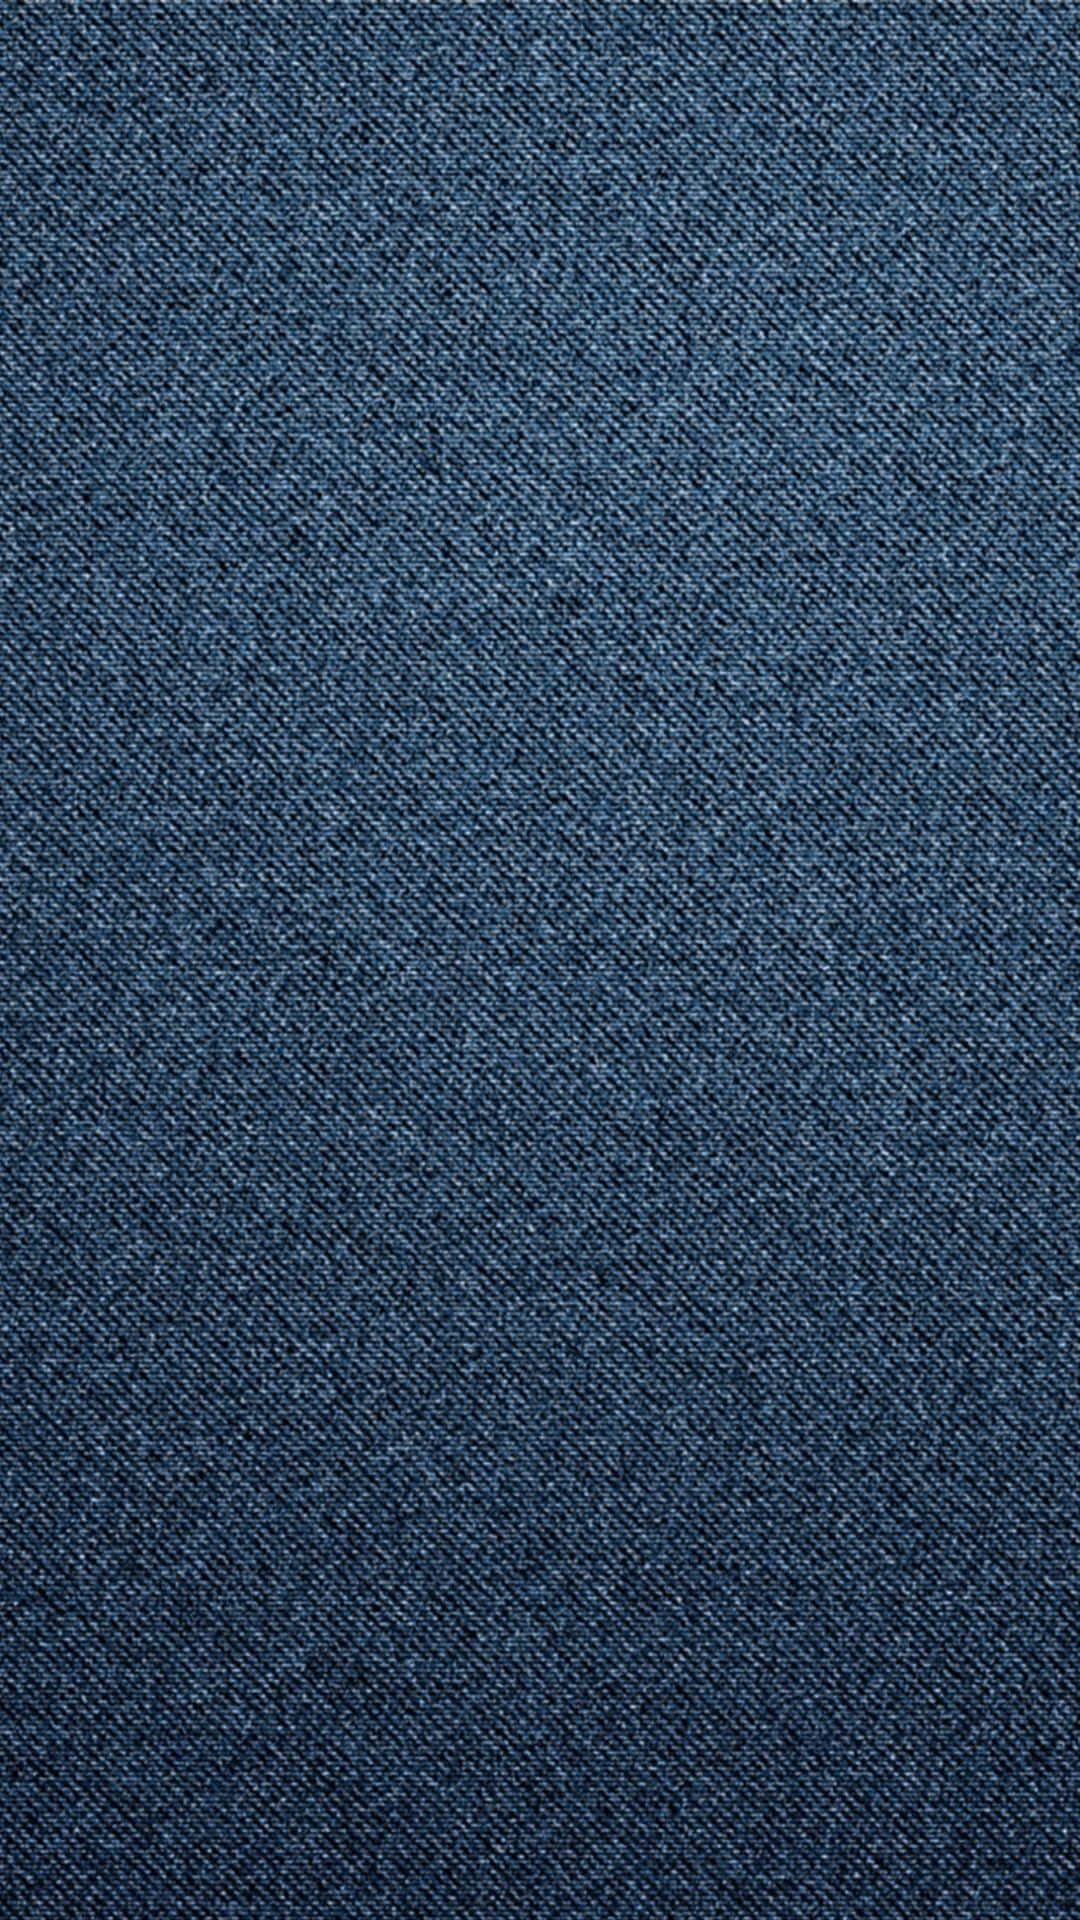 blue denim textile #texture #background #jeans #surface #1080P #wallpaper  #hdwallpaper #desktop | Denim wallpaper, Stunning wallpapers, Denim  background